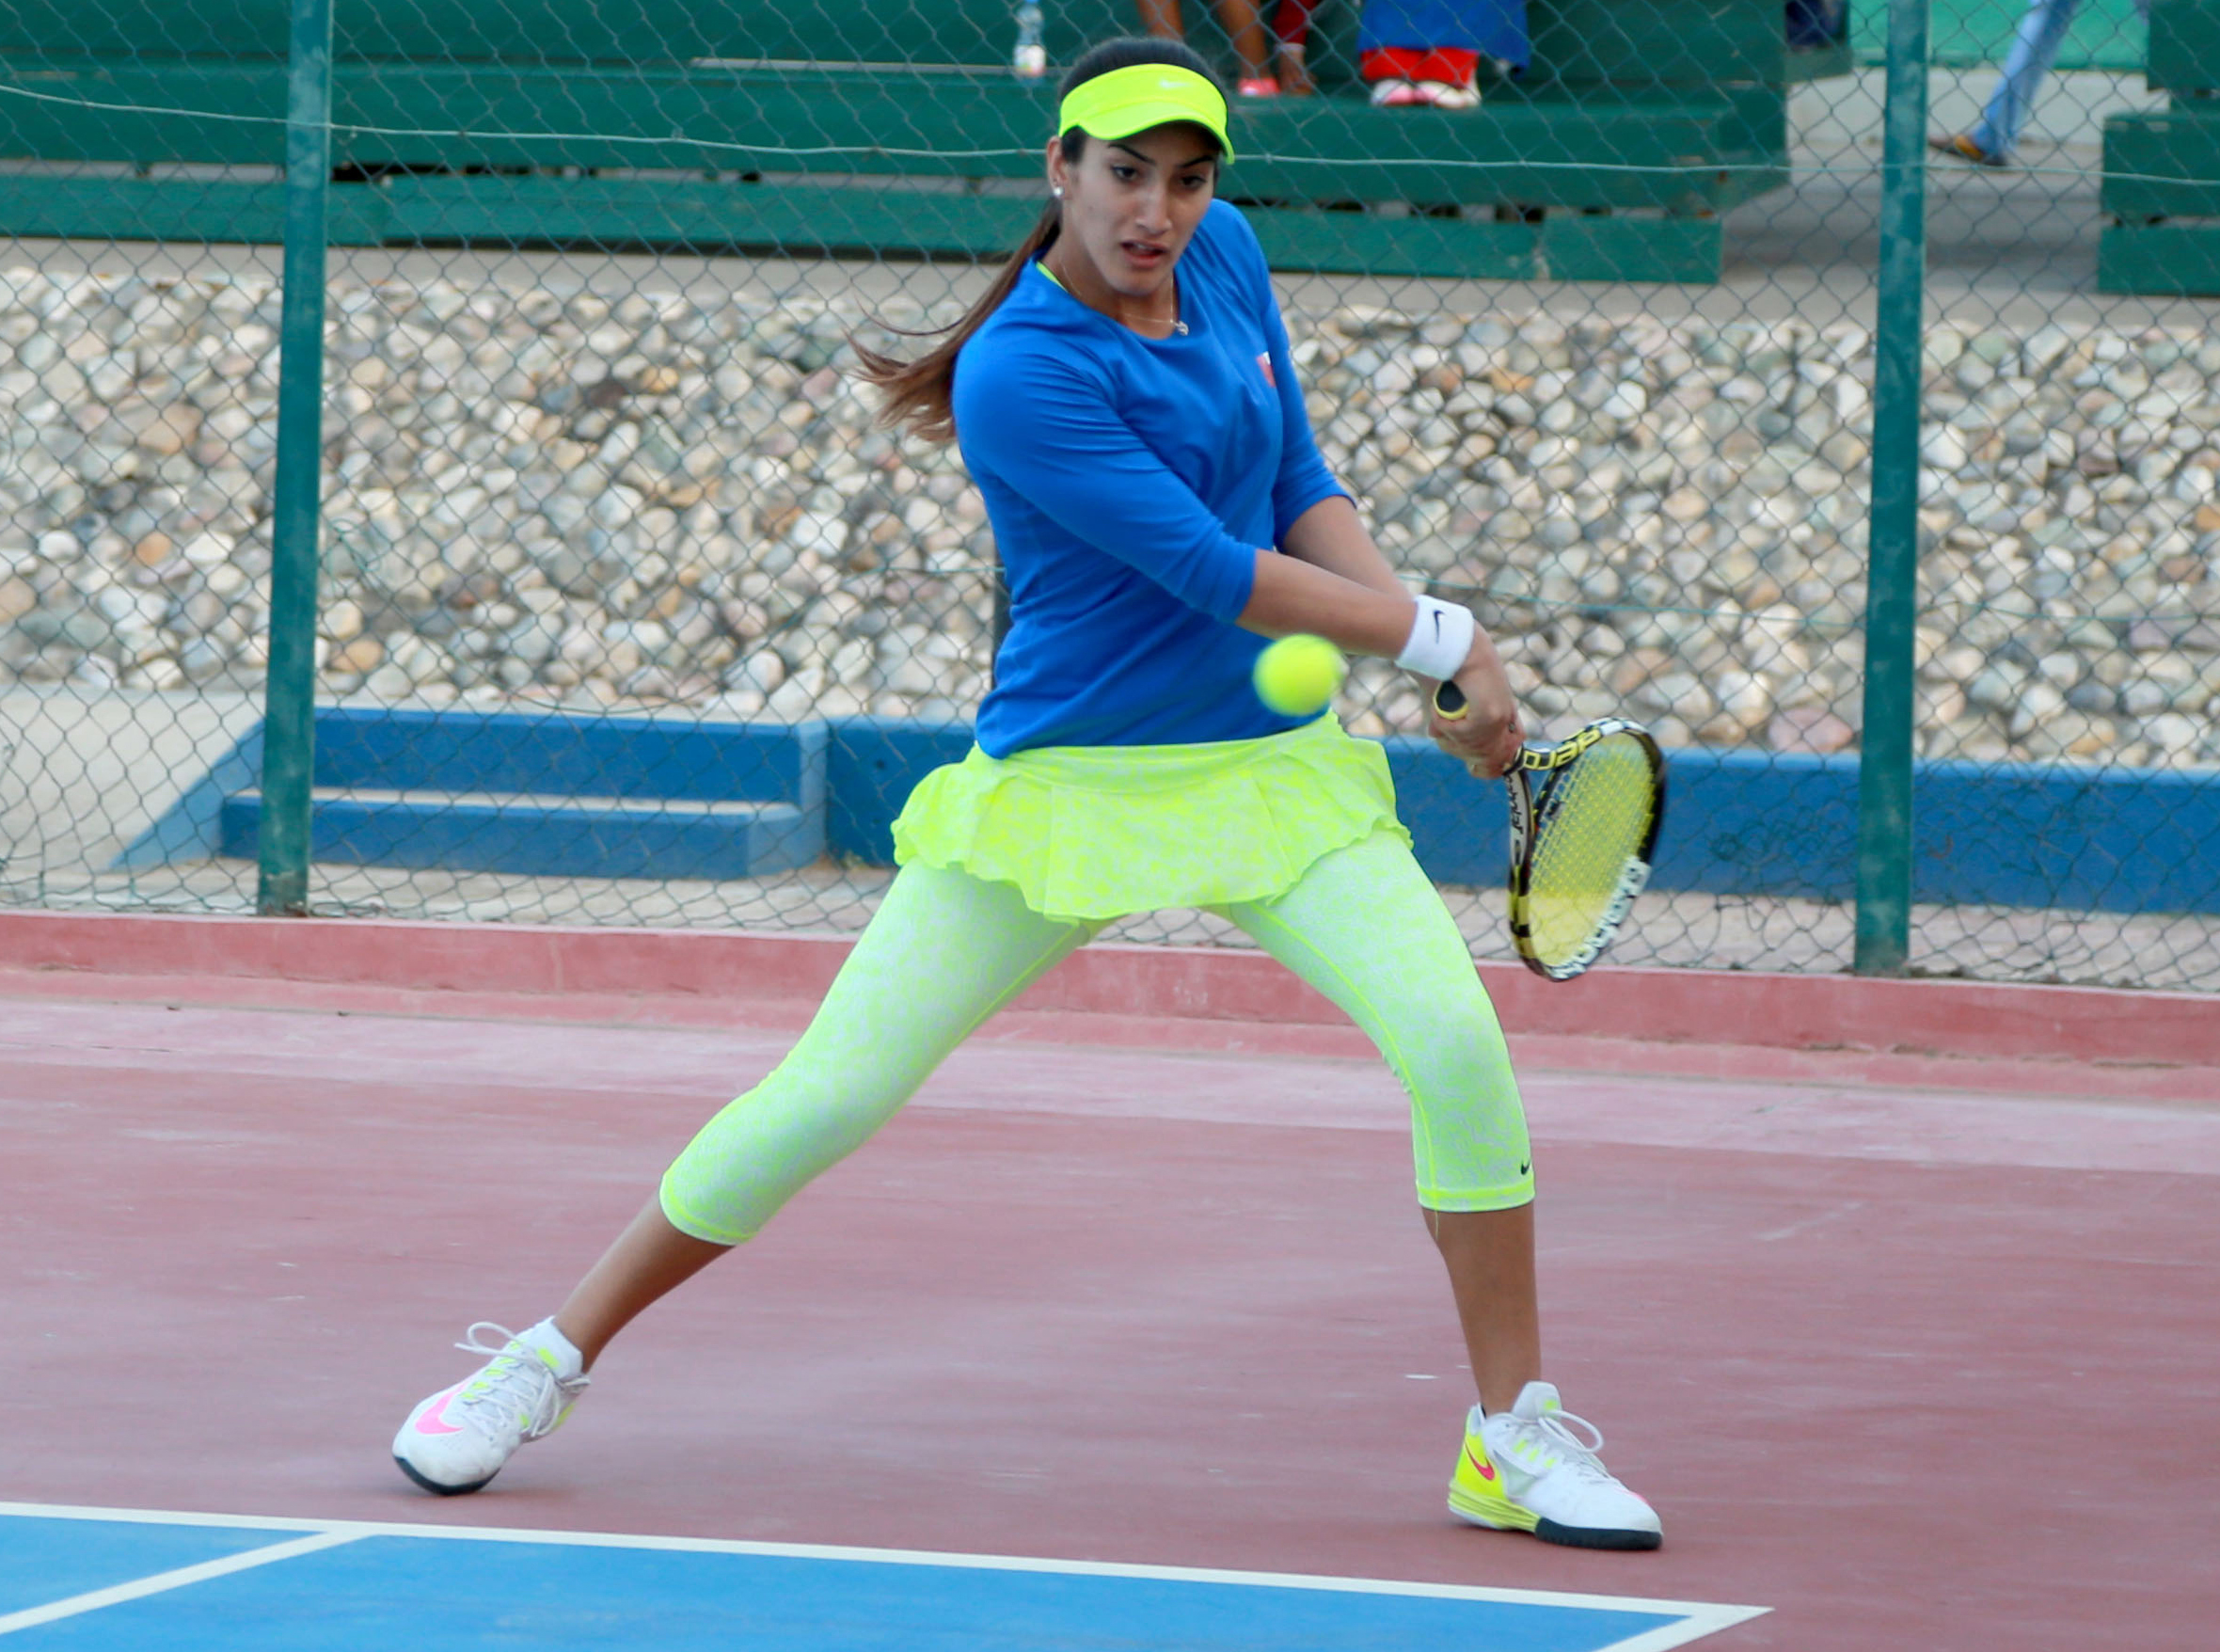 Oman Tennis: Fatma Al Nabhani marches ahead in Rabat